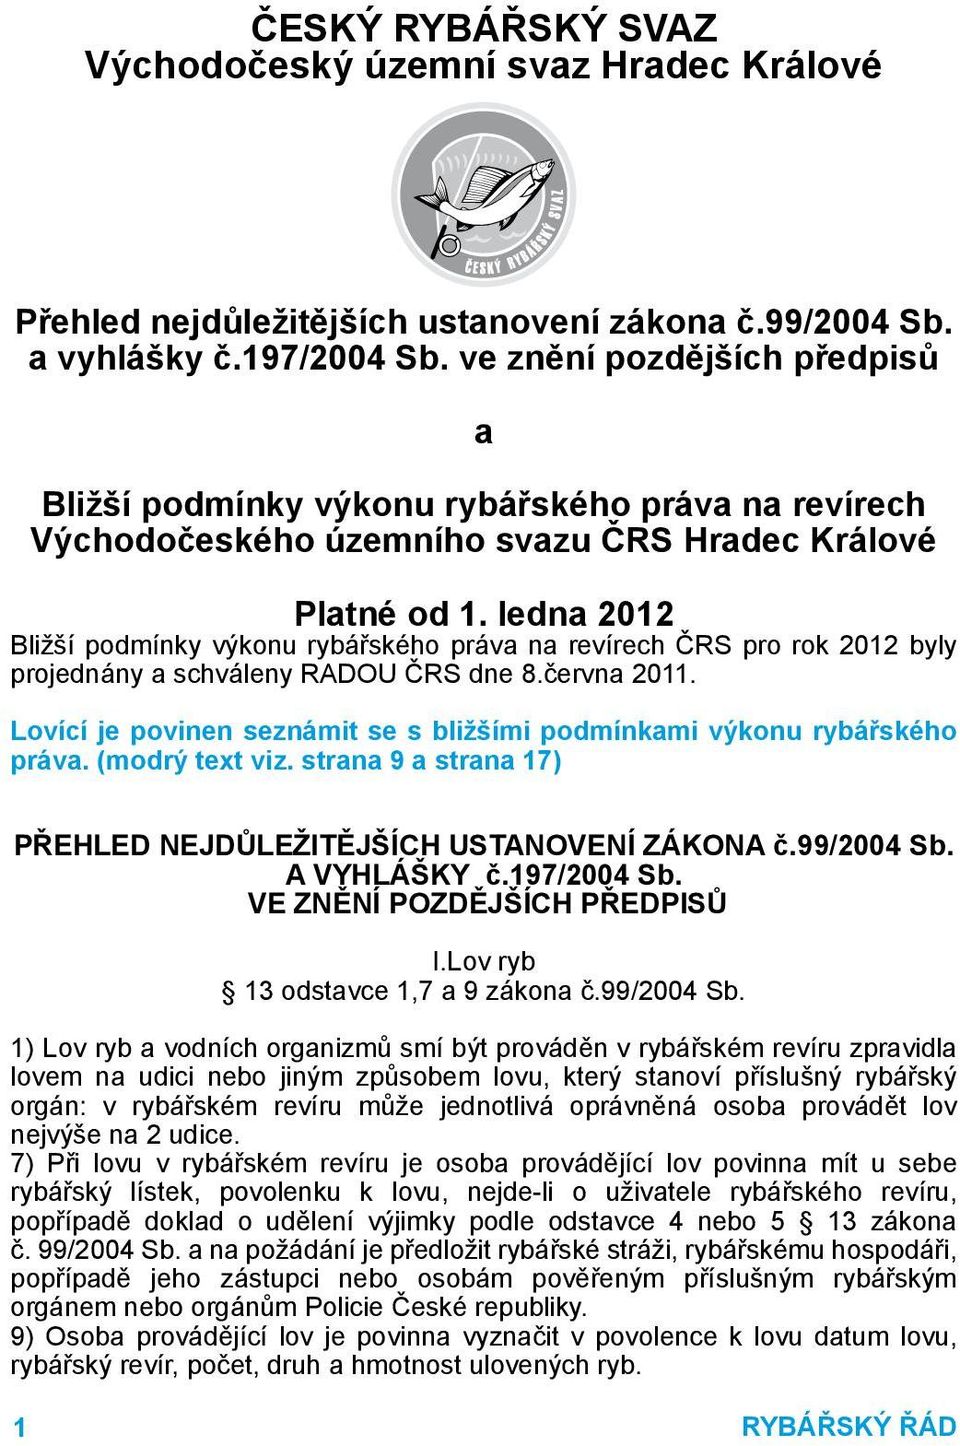 ledna 2012 Bližší podmínky výkonu rybářského práva na revírech ČRS pro rok 2012 byly projednány a schváleny RADOU ČRS dne 8.června 2011.